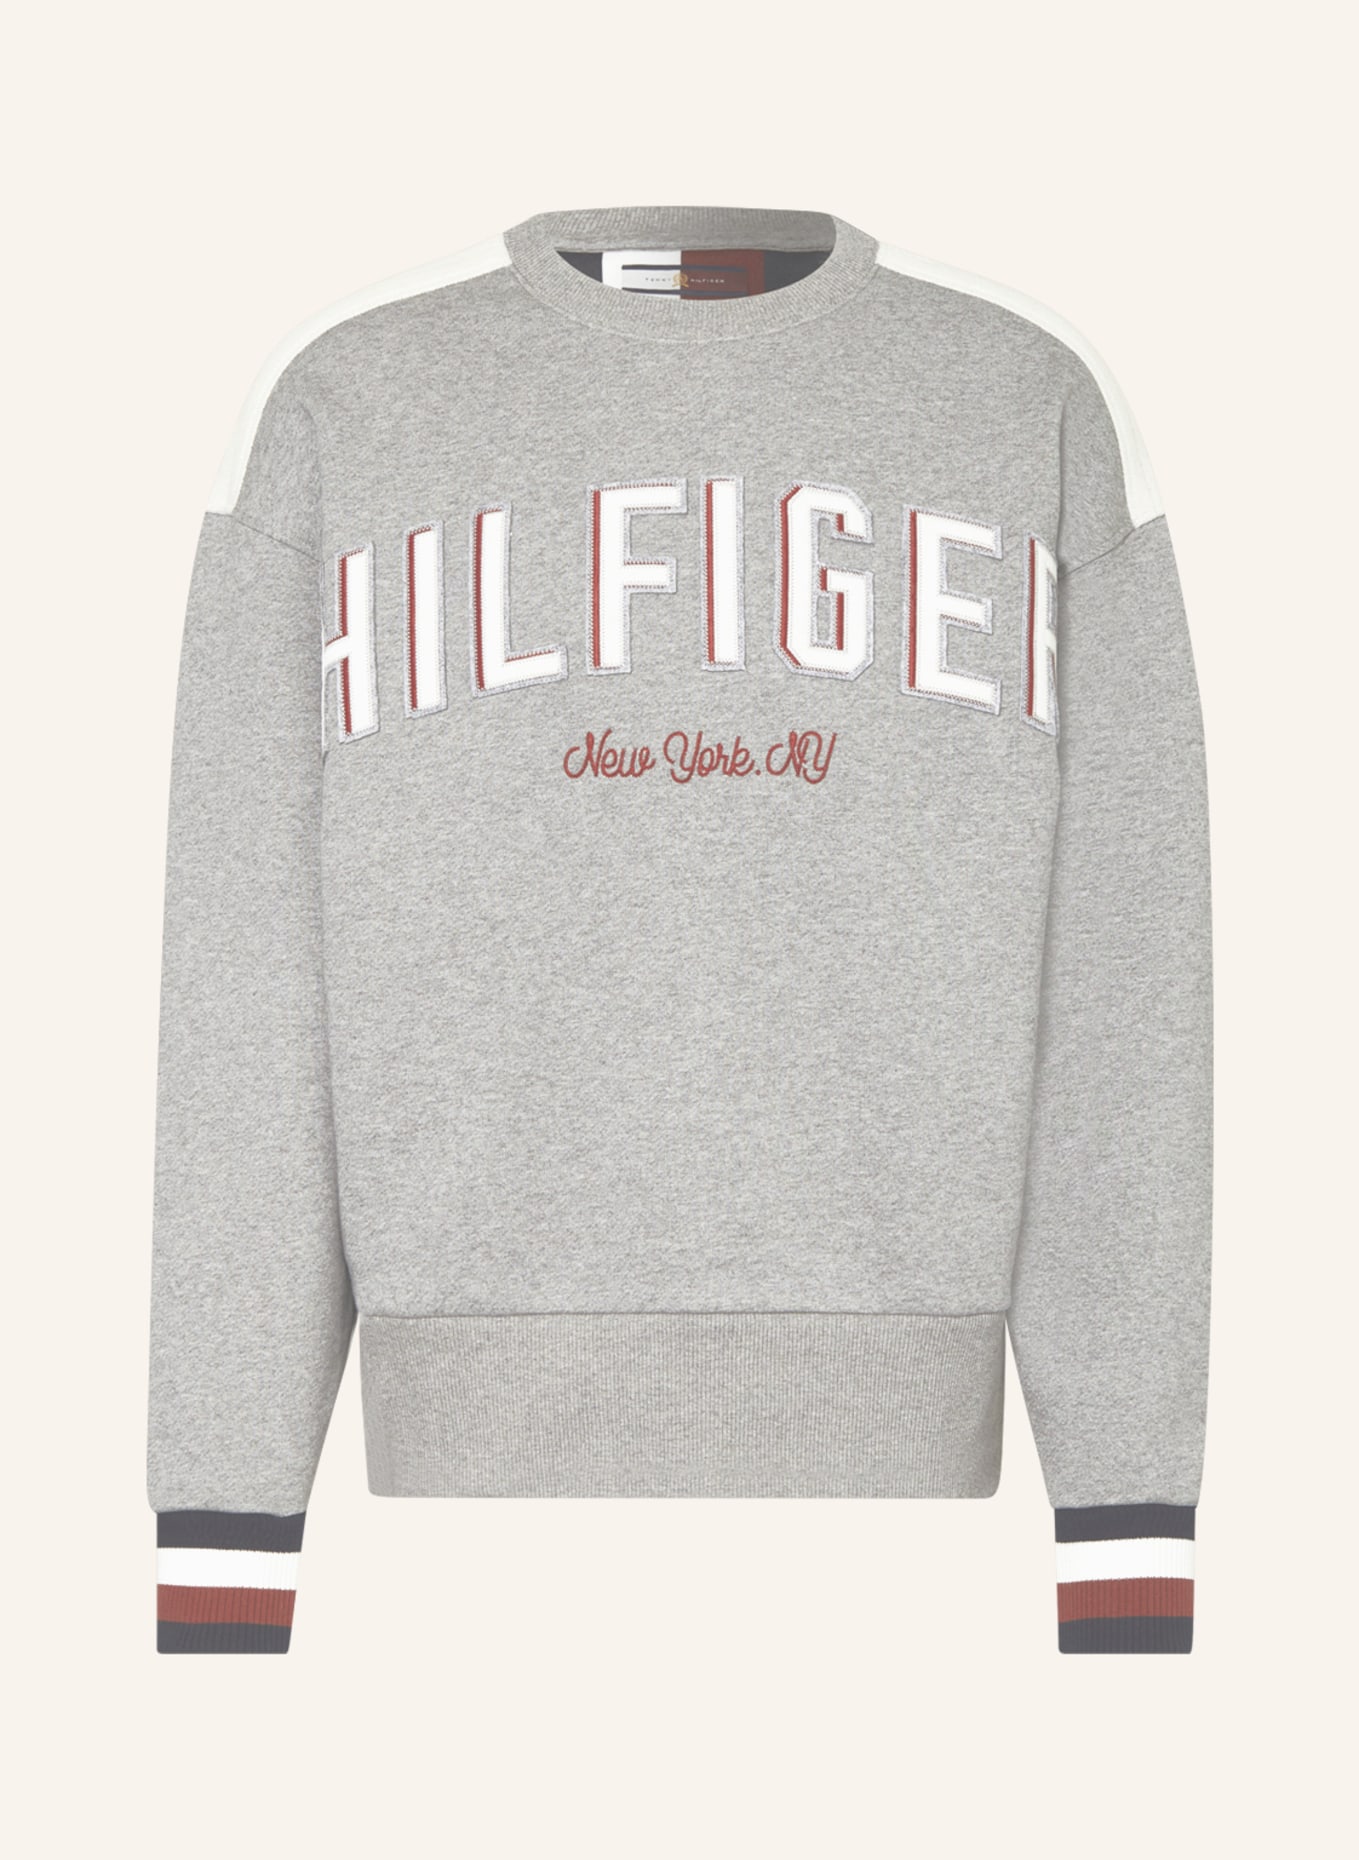 TOMMY HILFIGER Sweatshirt mit Galonstreifen, Farbe: GRAU/ WEISS/ ROT (Bild 1)